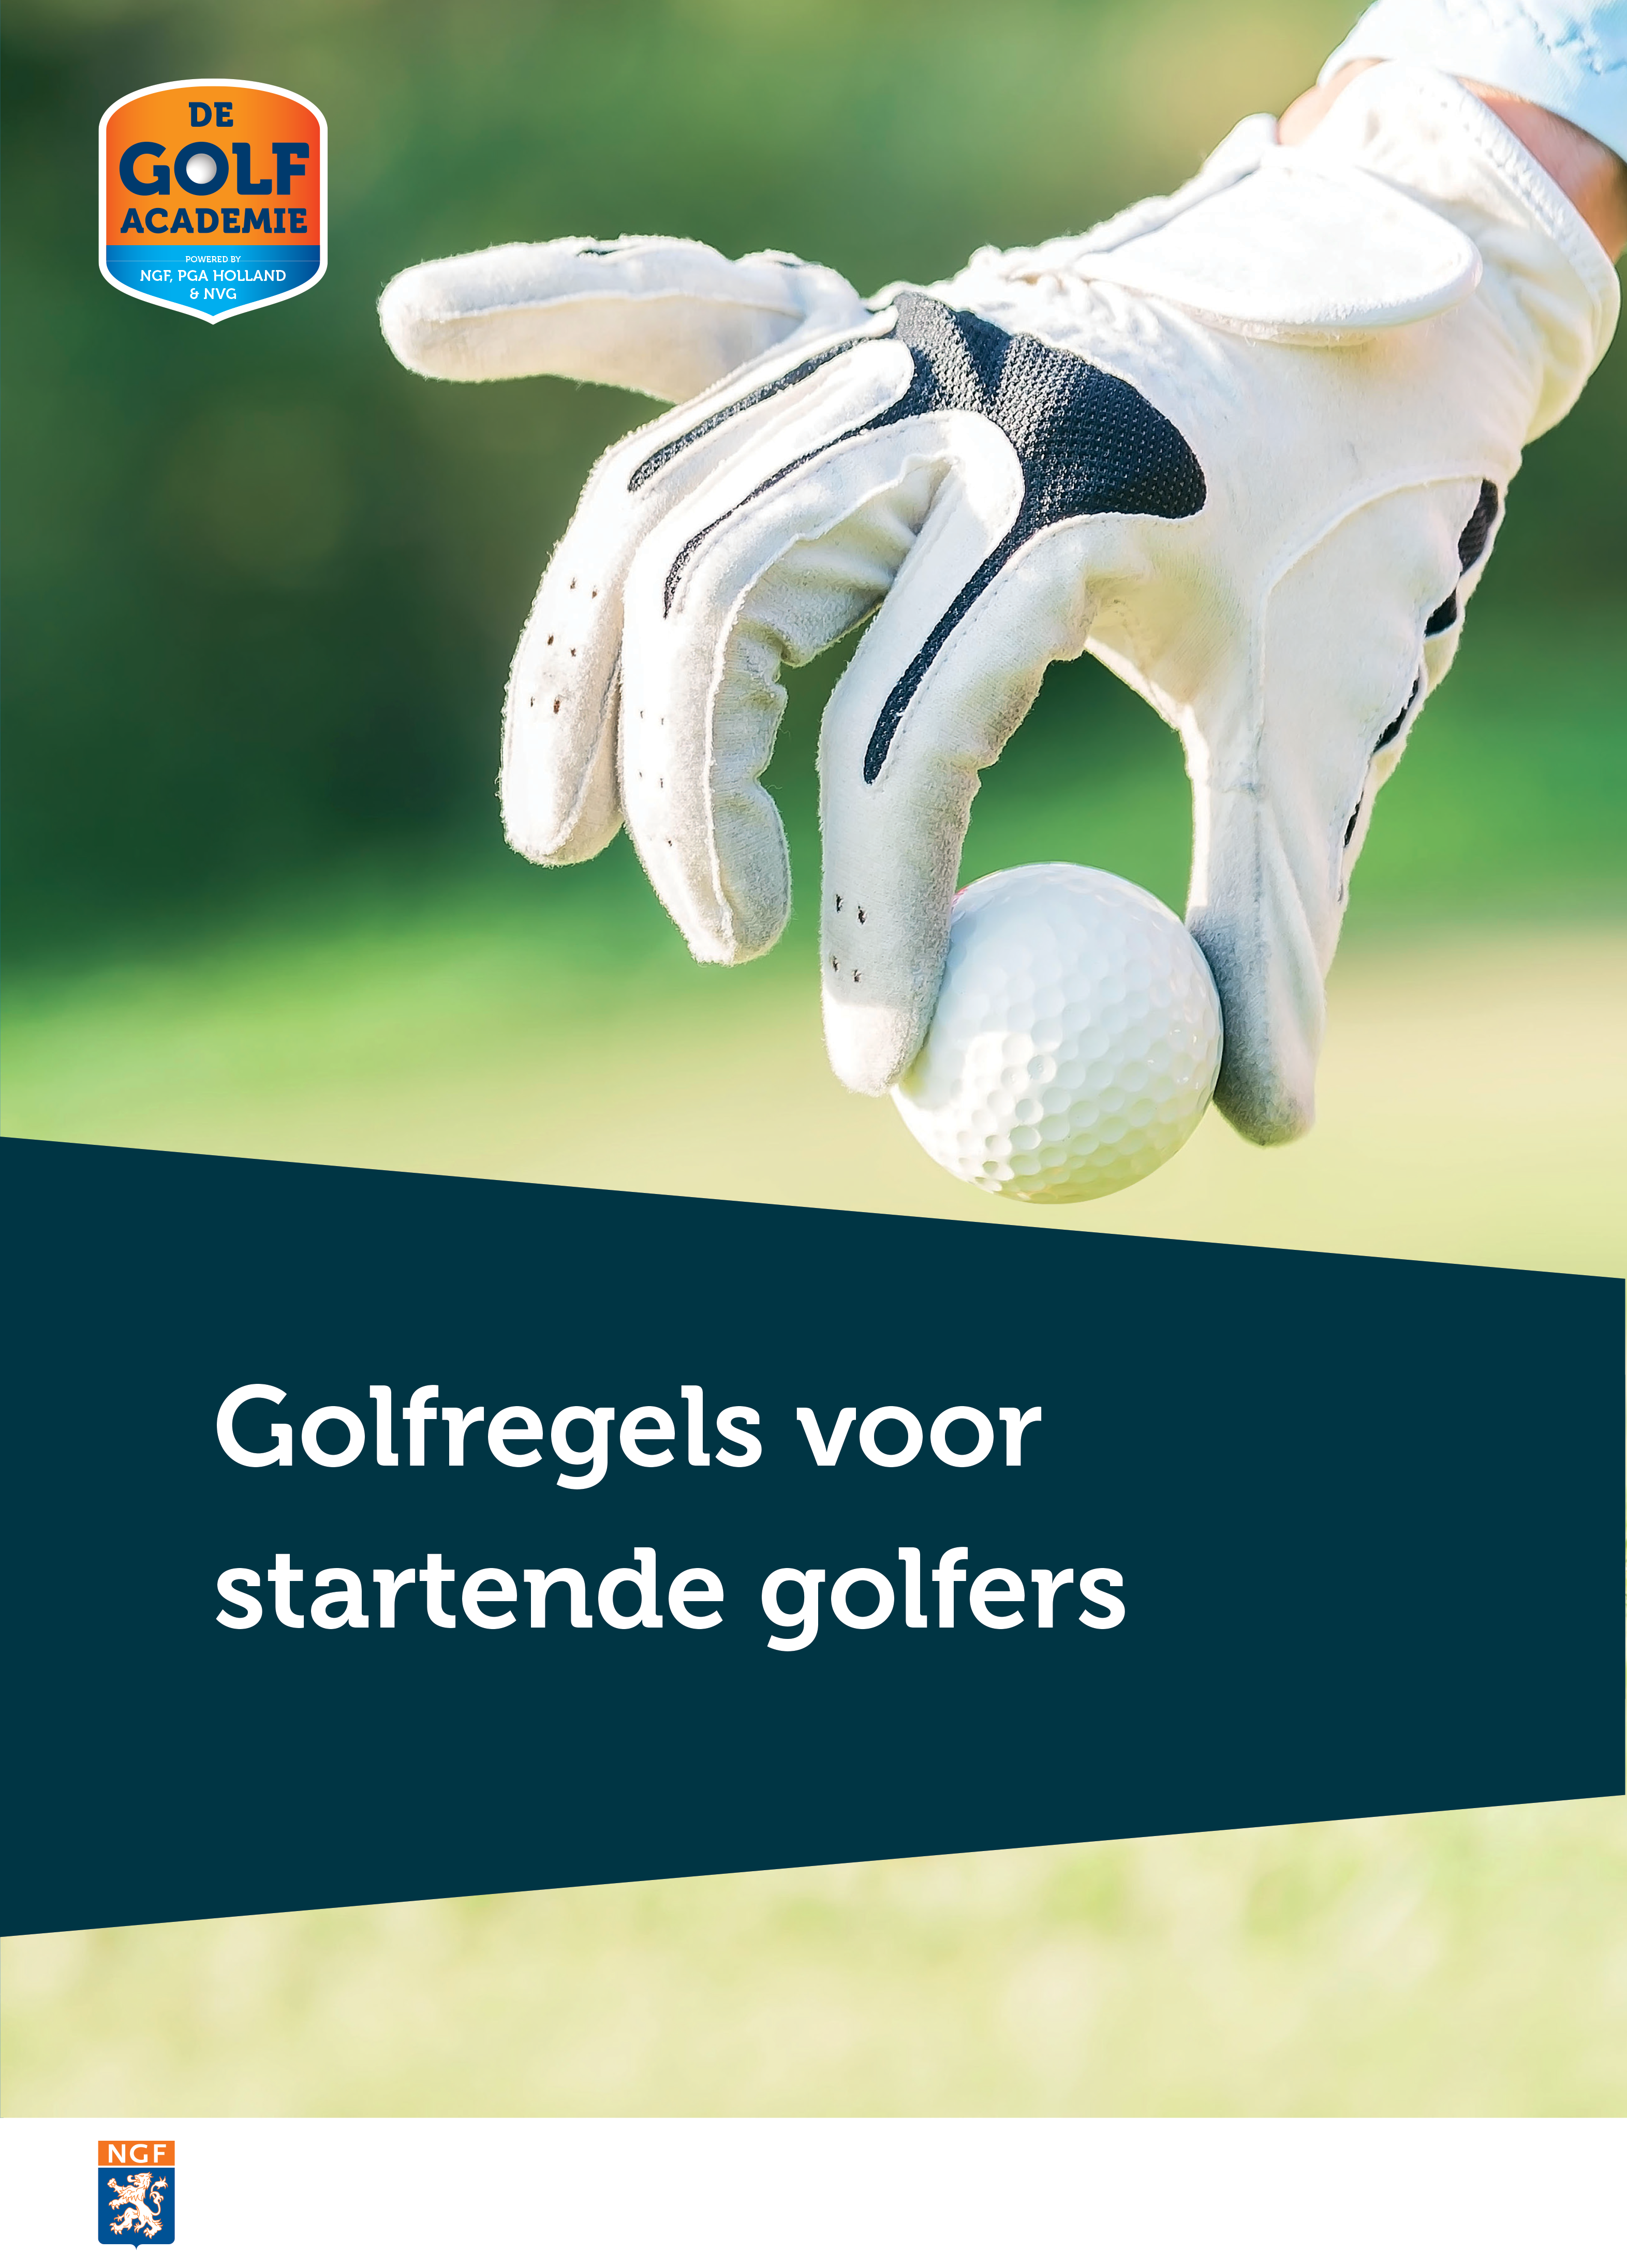 Golfregels voor startende golfers (NGF)